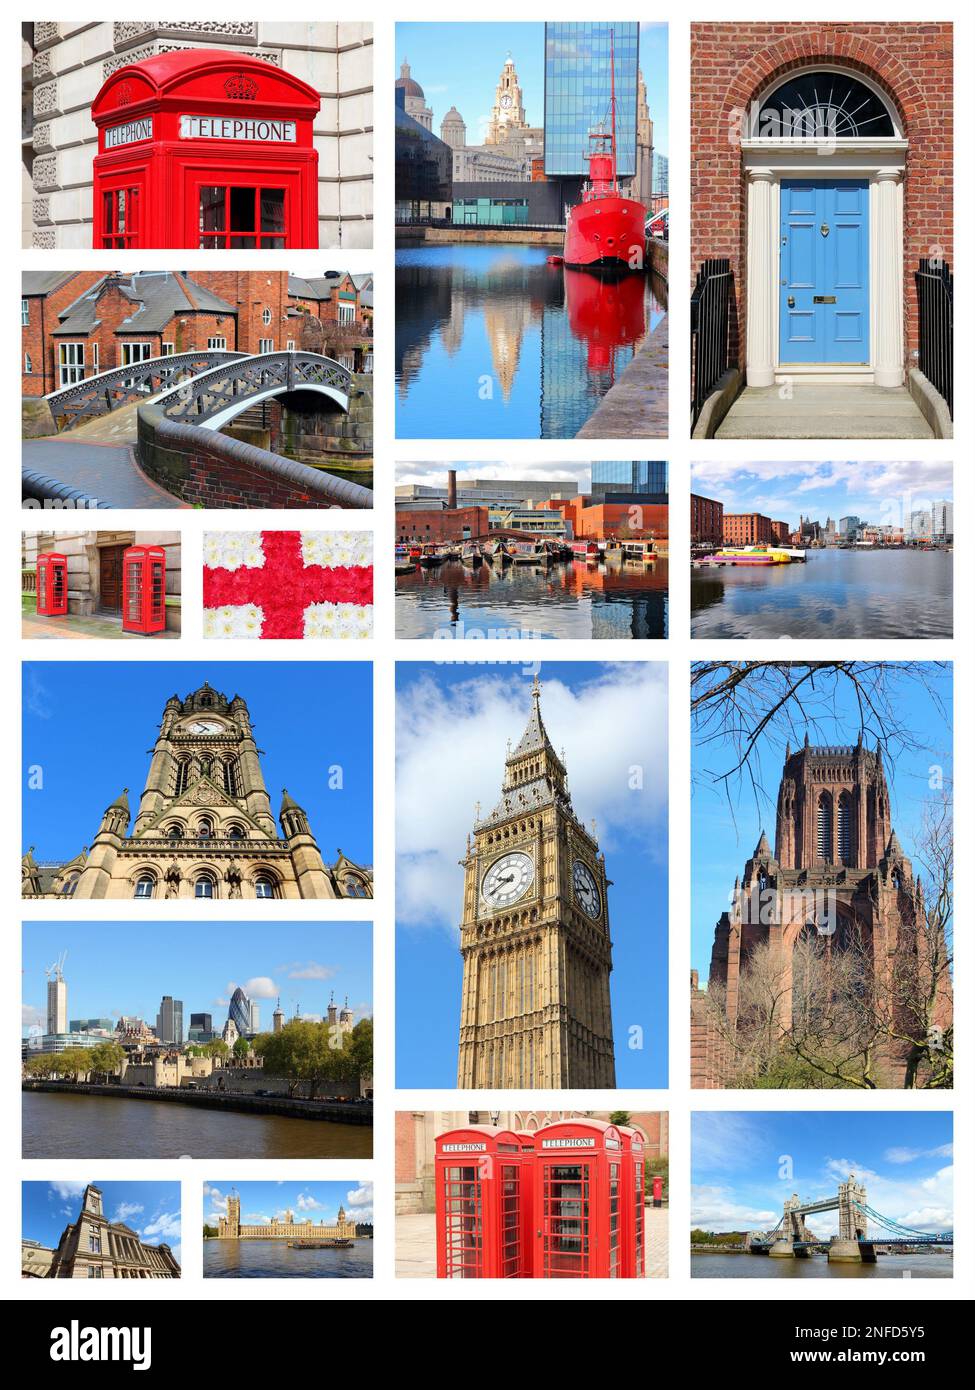 Inghilterra, Regno Unito colloca collage fotografico. Collage include le principali città come Londra, Birmingham, Manchester, Liverpool e Bolton. Foto Stock